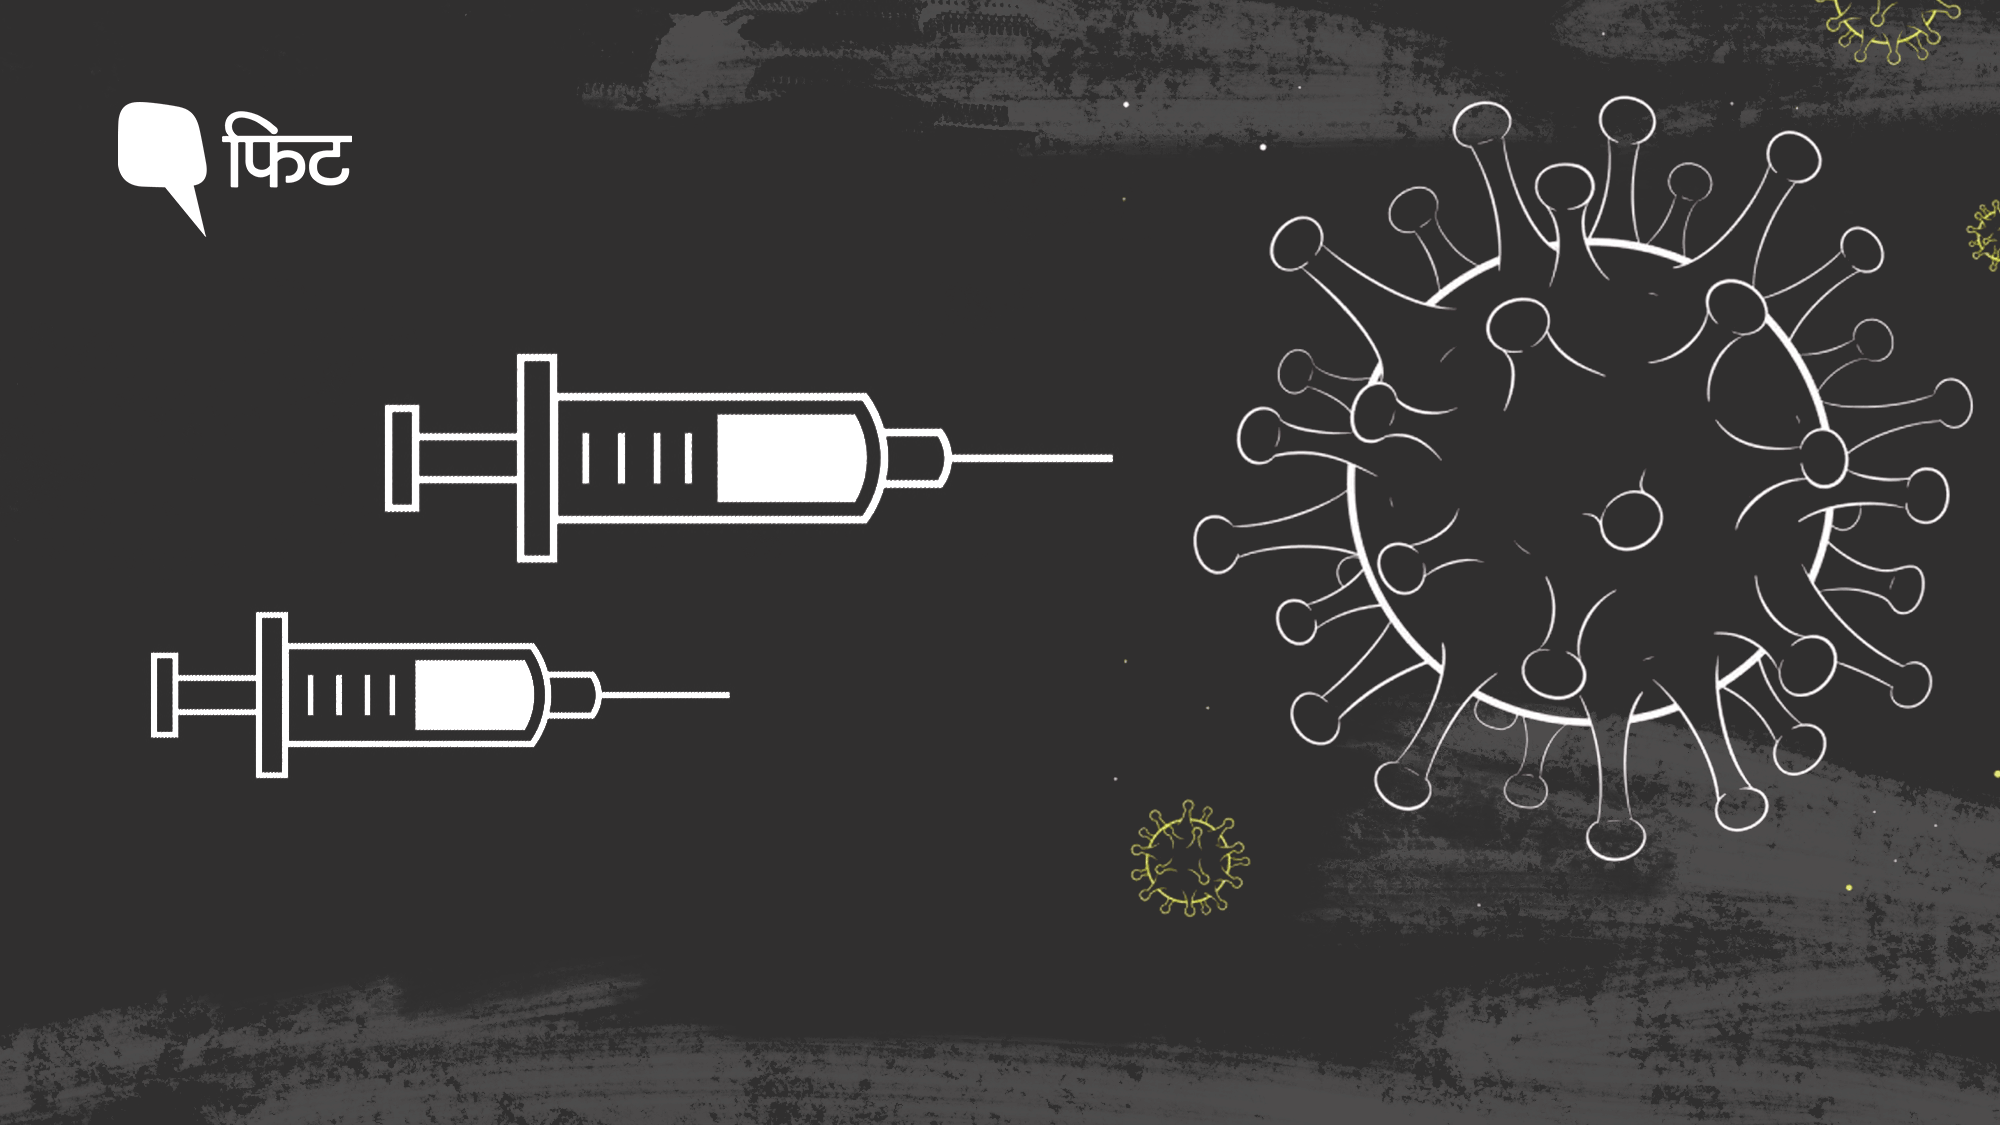 फेज 3 के शुरुआती एनालिसिस में कई कोरोना वैक्सीन के प्रभावी होने की खबर